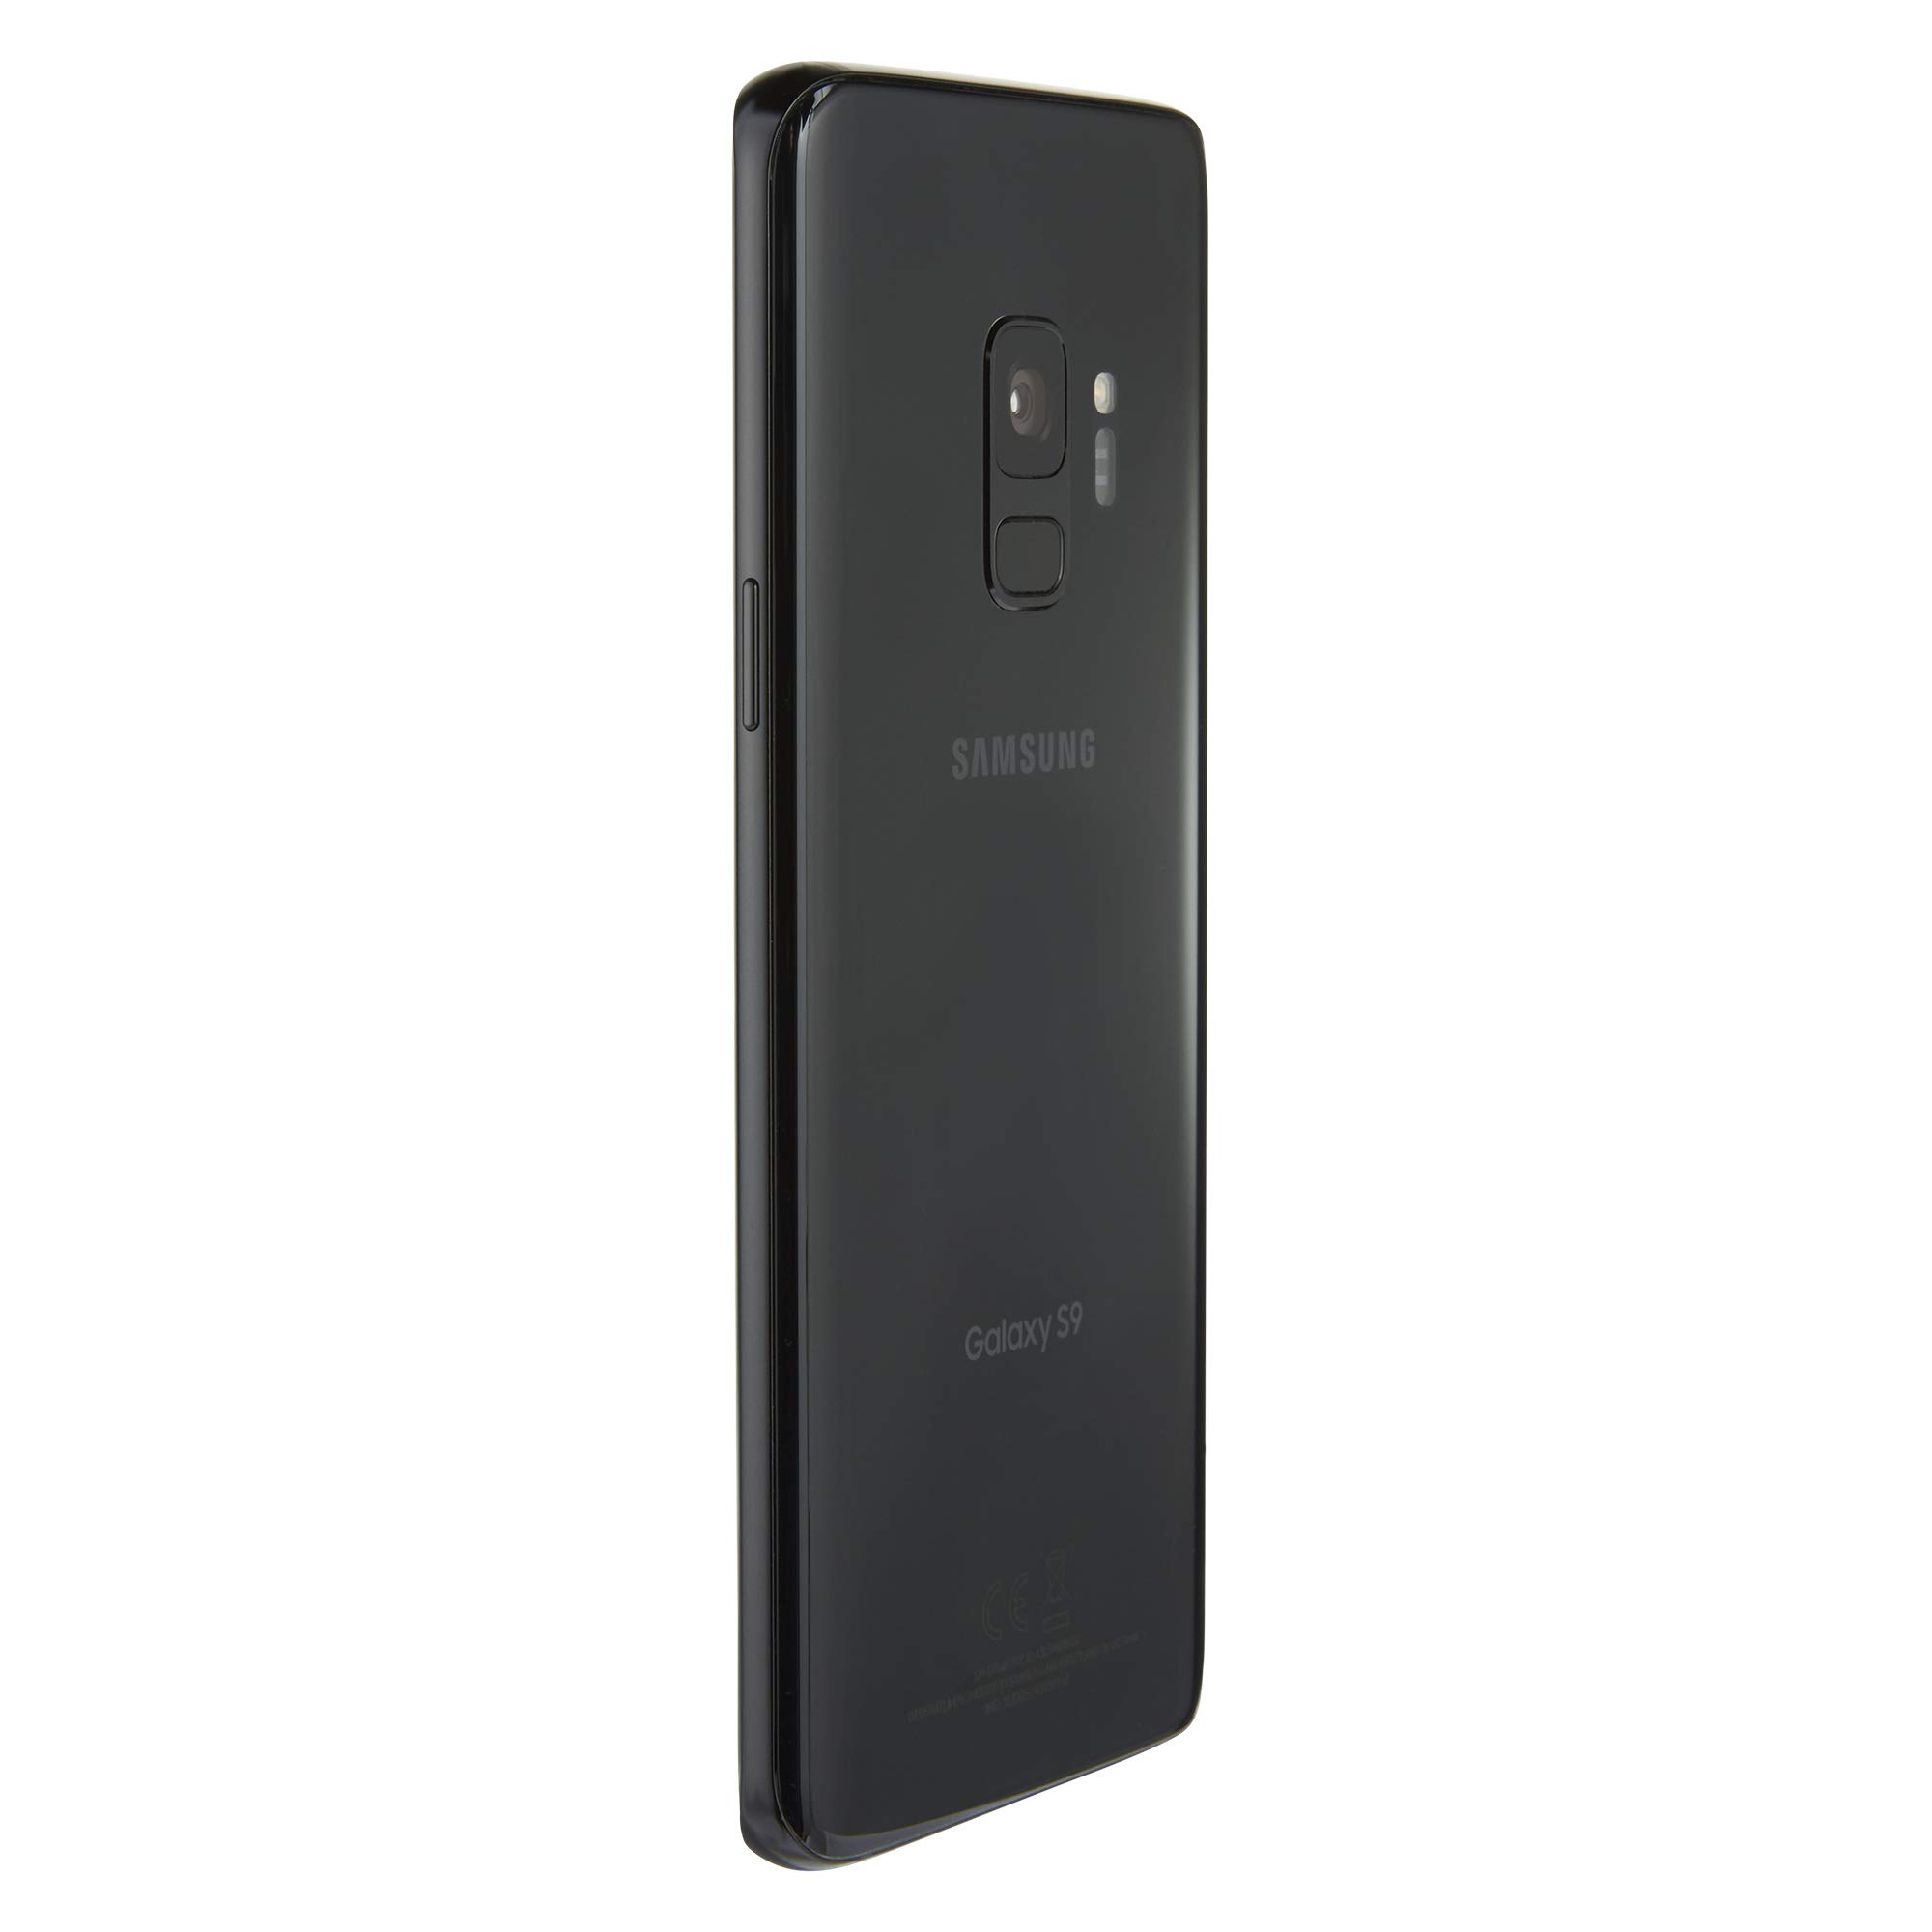 Samsung Galaxy S9, 64GB, Midnight Black - For Verizon (Renewed)